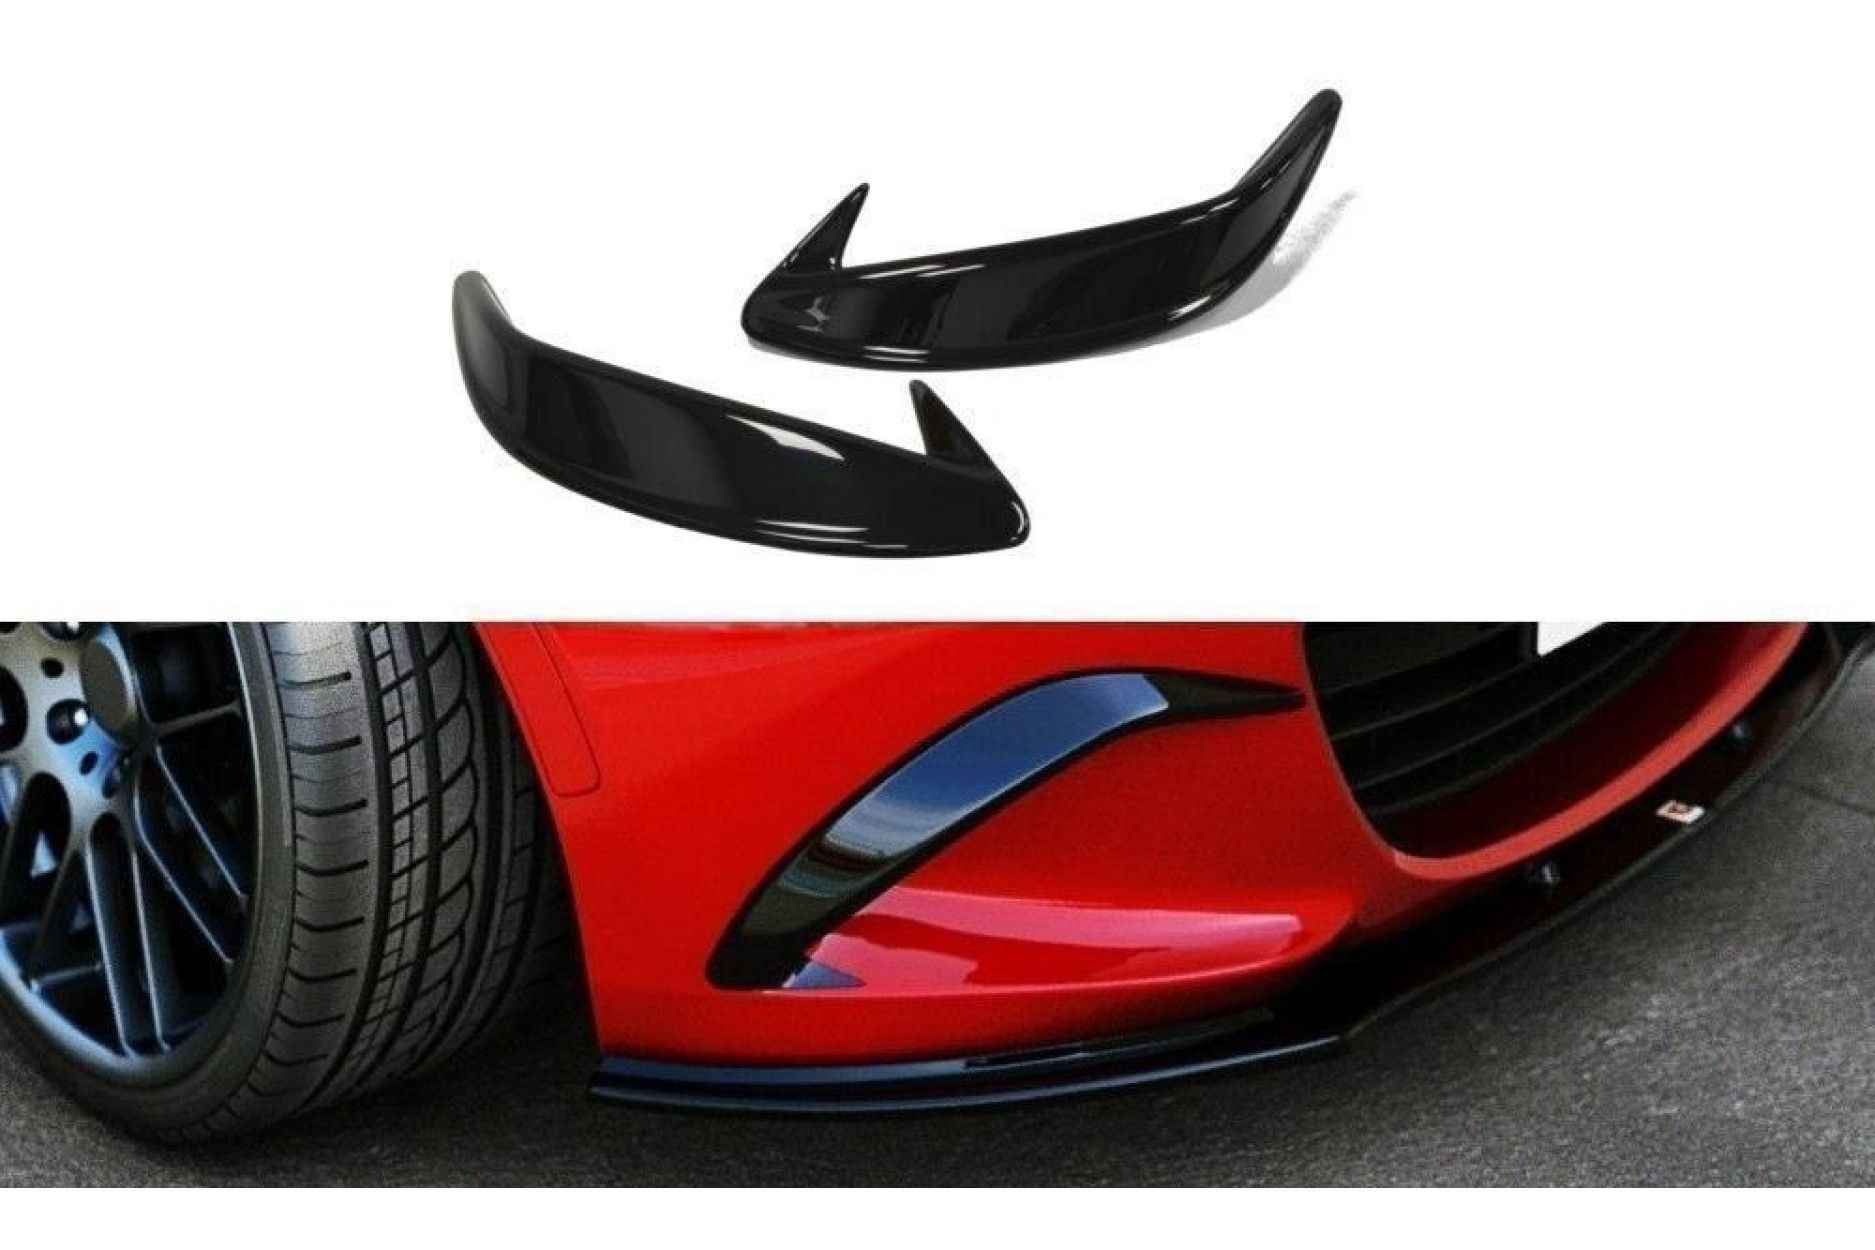 Maxton Design Abdeckung Nebelleuchte für Mazda MX-5 MK4 ND schwarz  hochglanz - online kaufen bei CFD